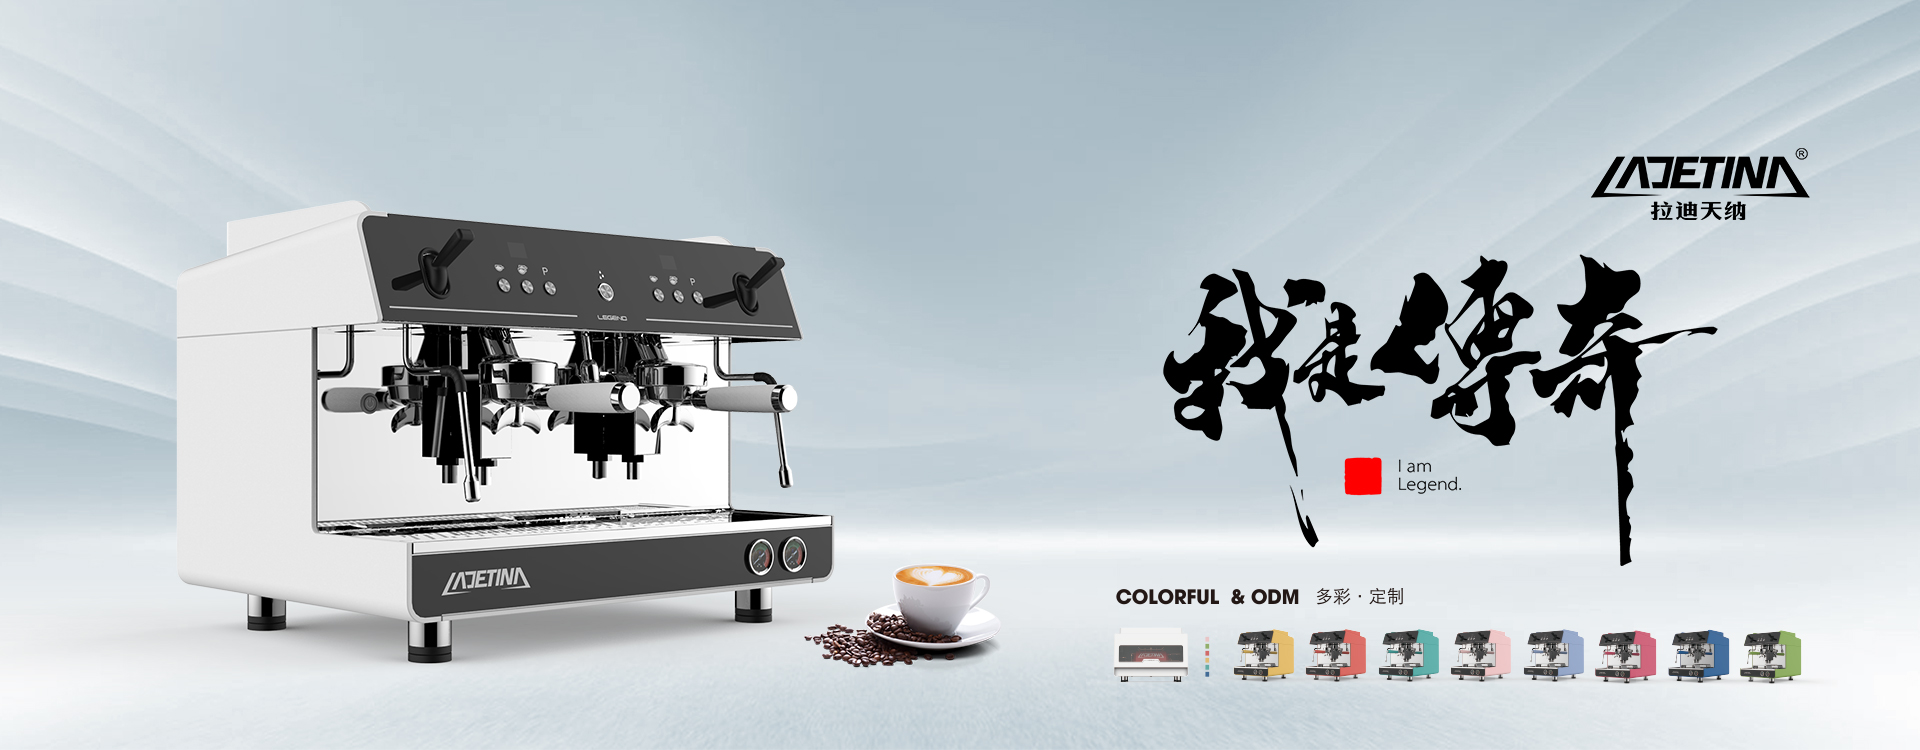 LADETINA 传奇商用意式半自动咖啡机源自大正咖啡集团,航空铝材喷涂工艺,进口E61机头,计时萃取功能,可调预浸泡,品牌直销,提供个性化定制!